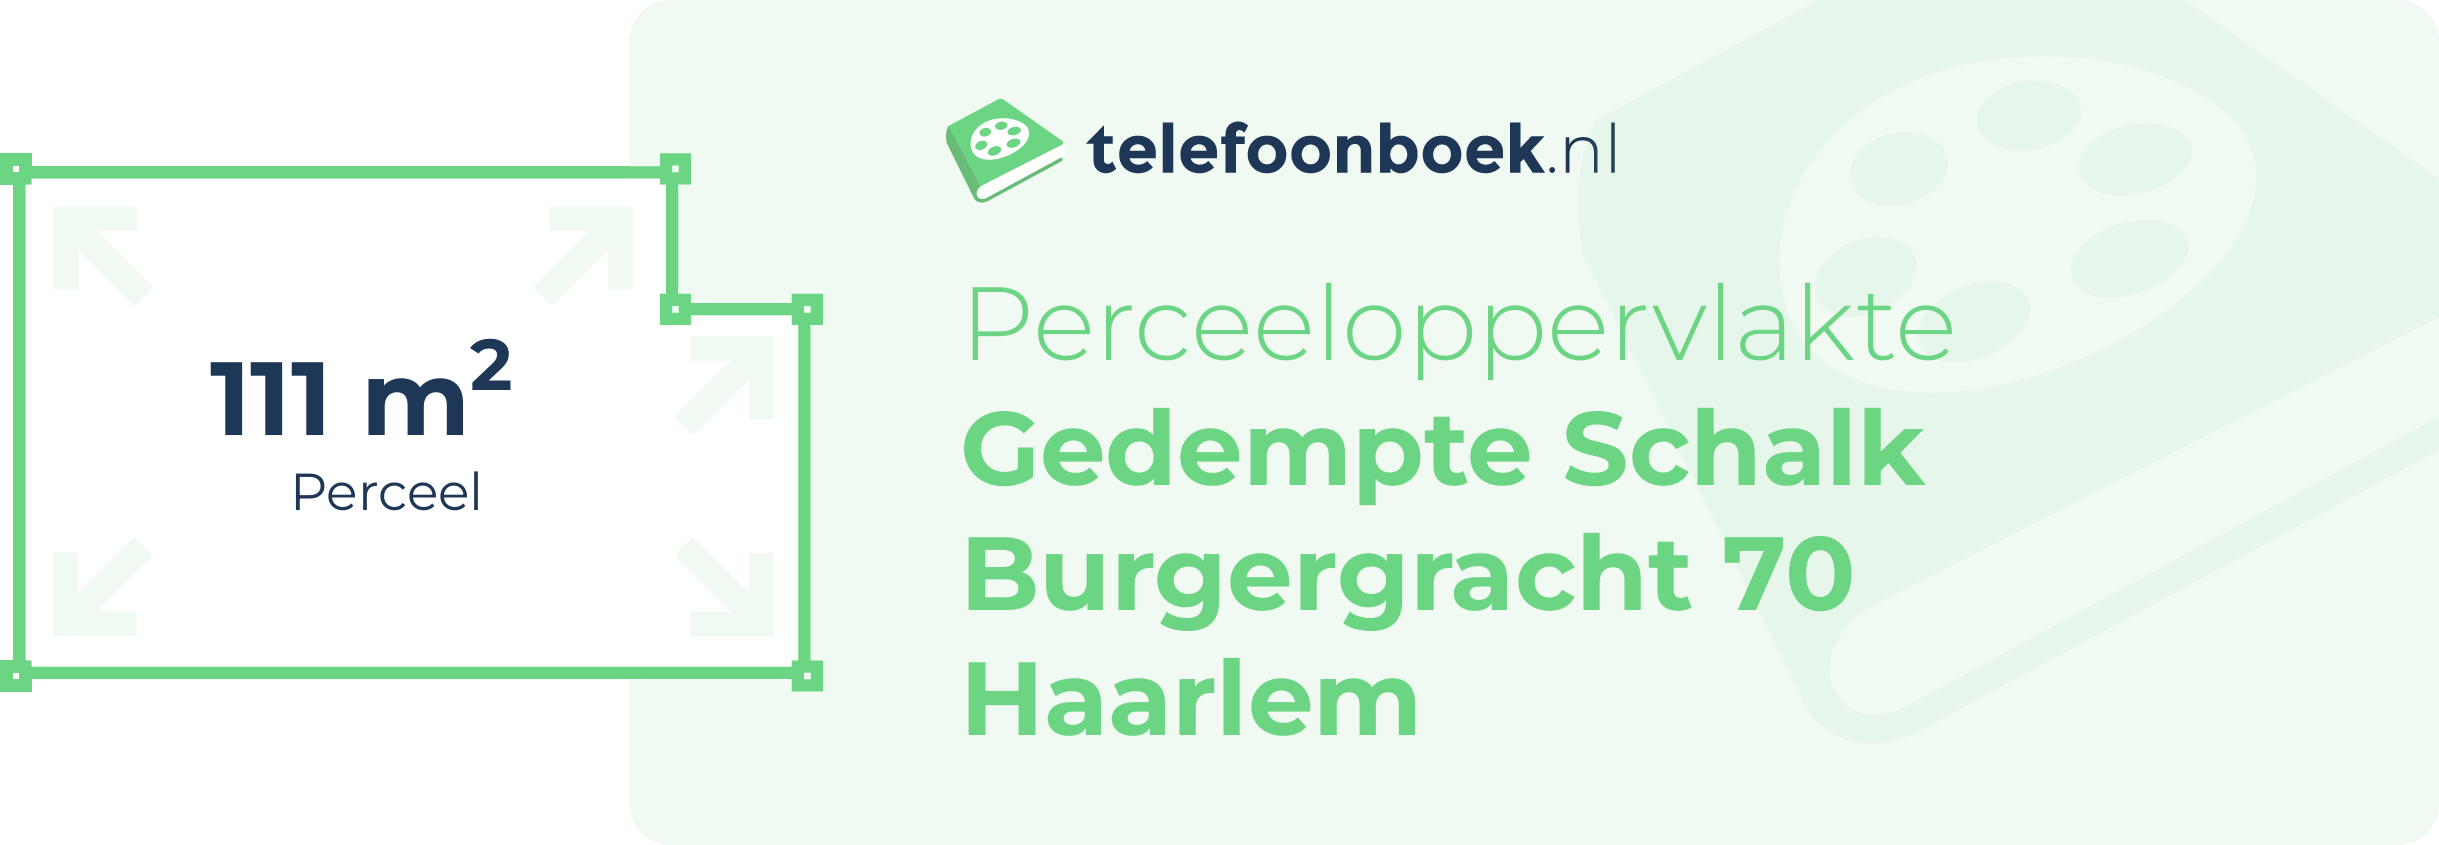 Perceeloppervlakte Gedempte Schalk Burgergracht 70 Haarlem